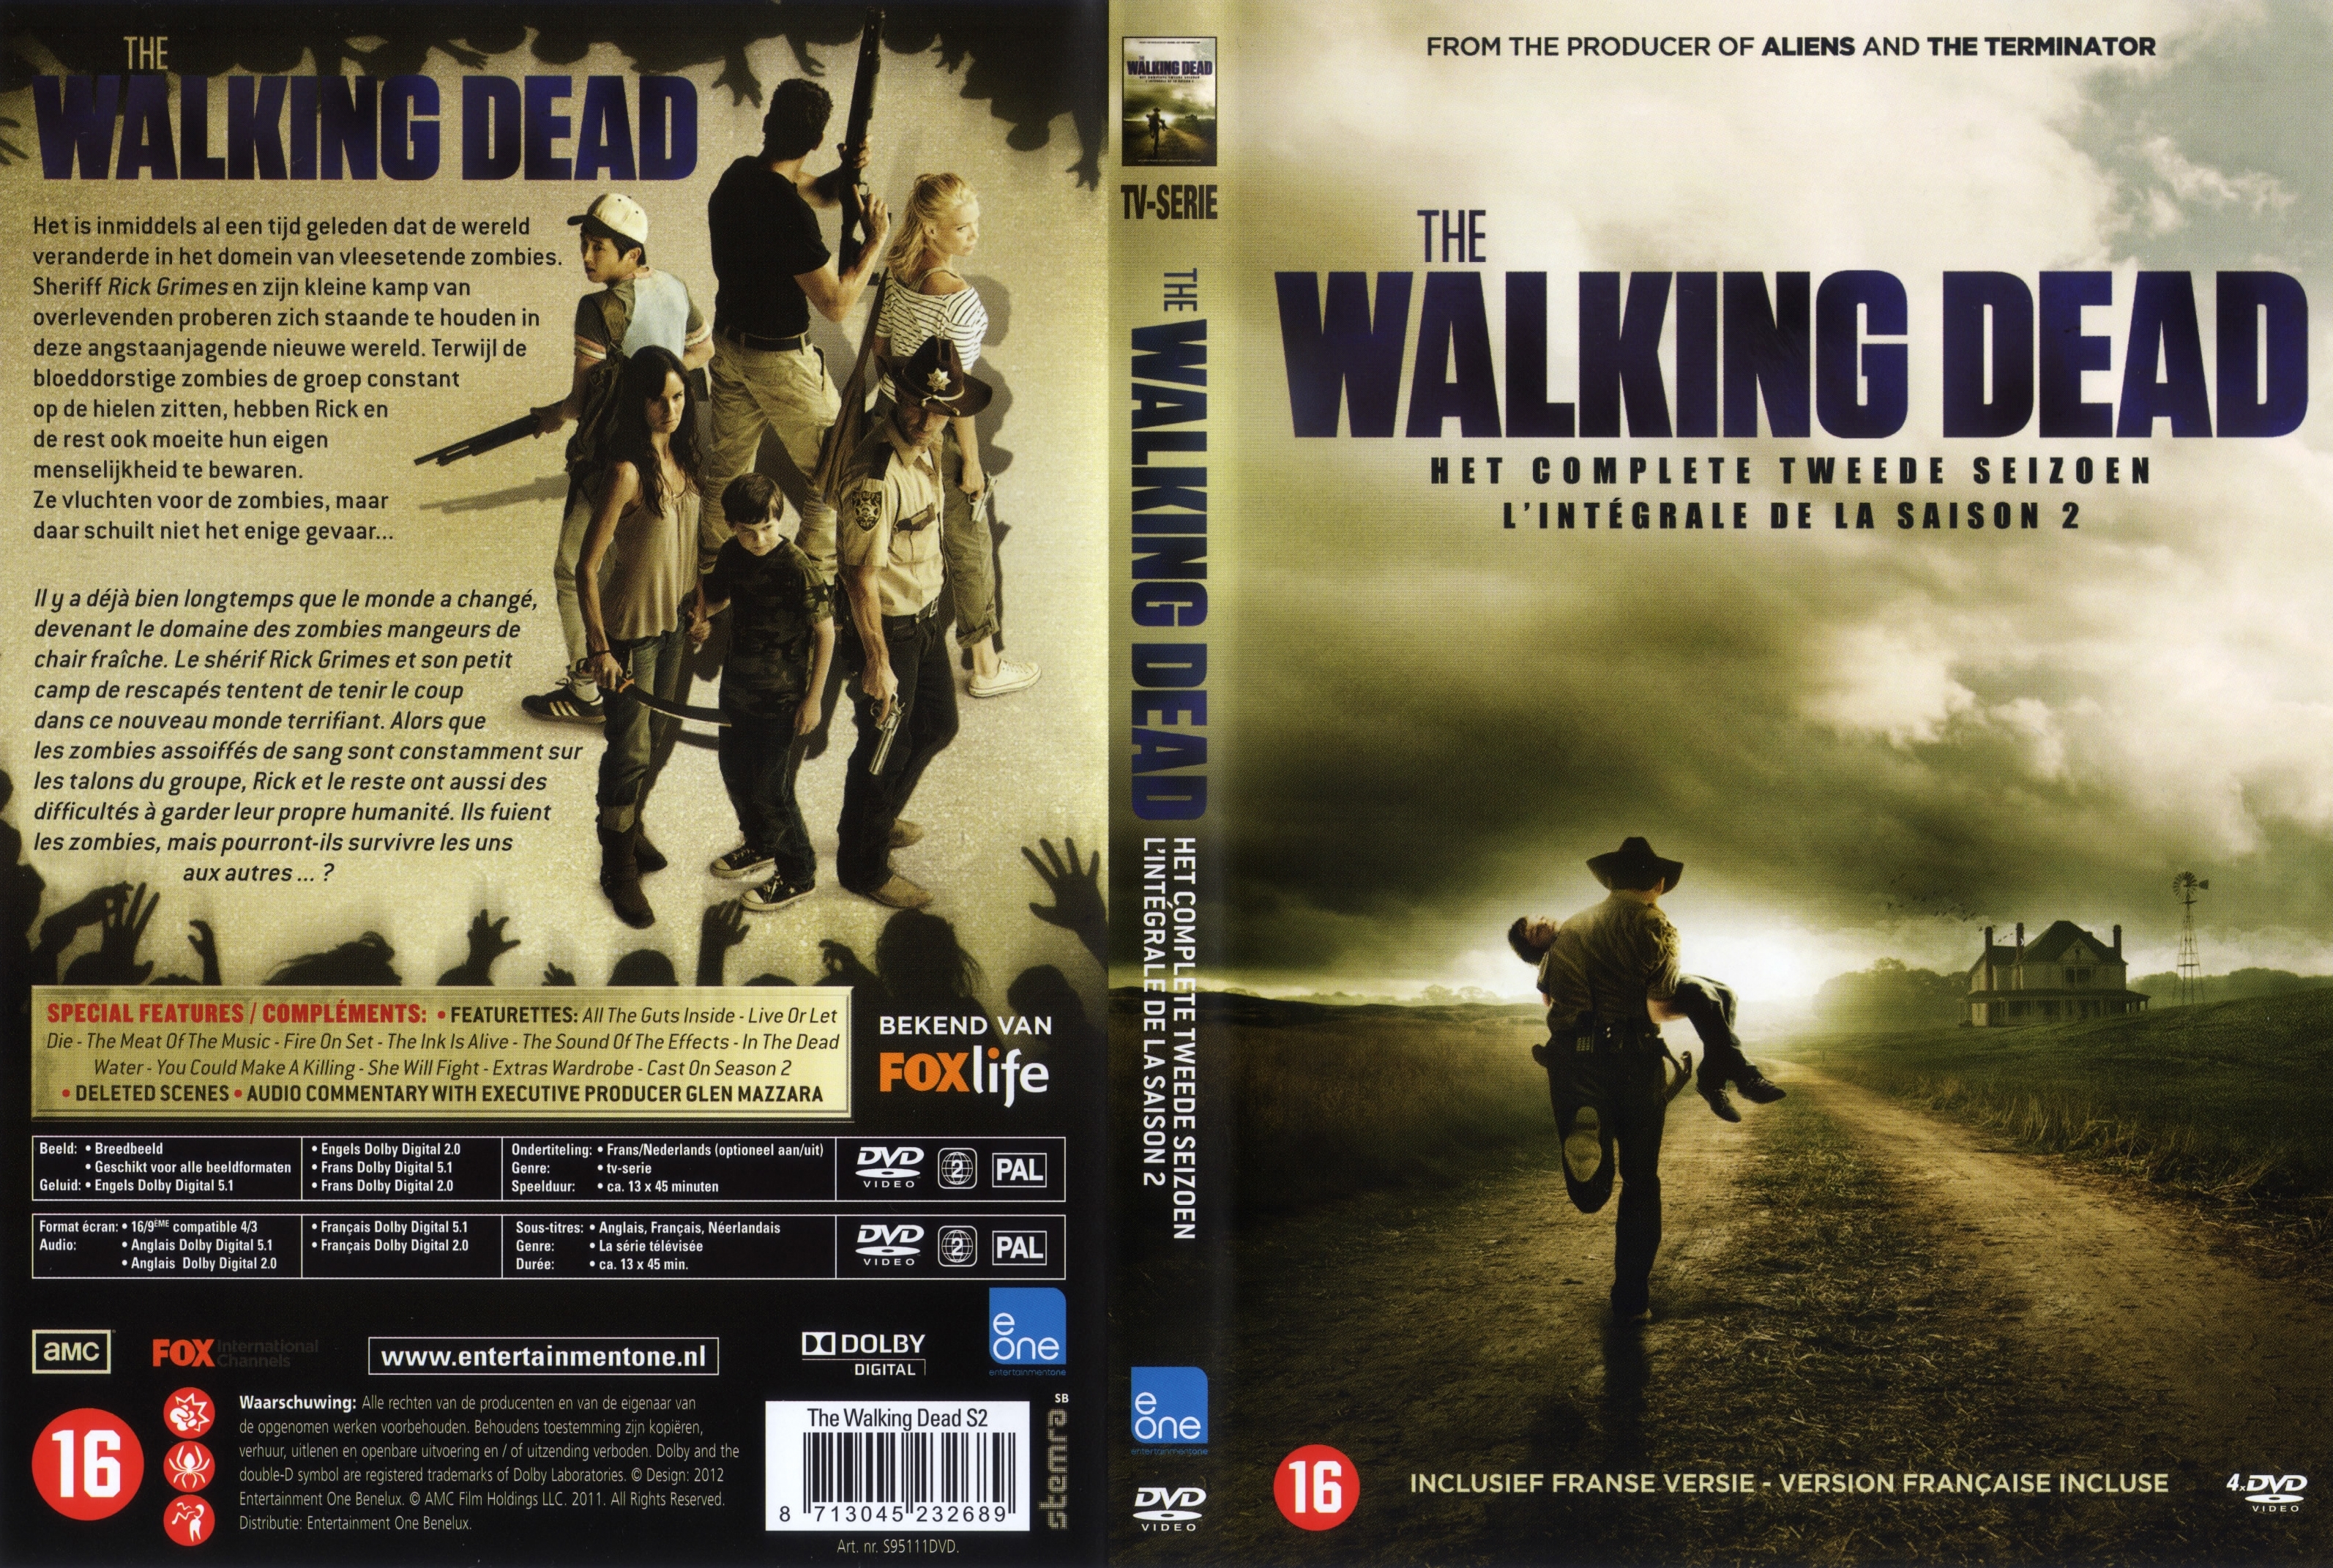 Jaquette DVD The Walking Dead Saison 2 COFFRET v2